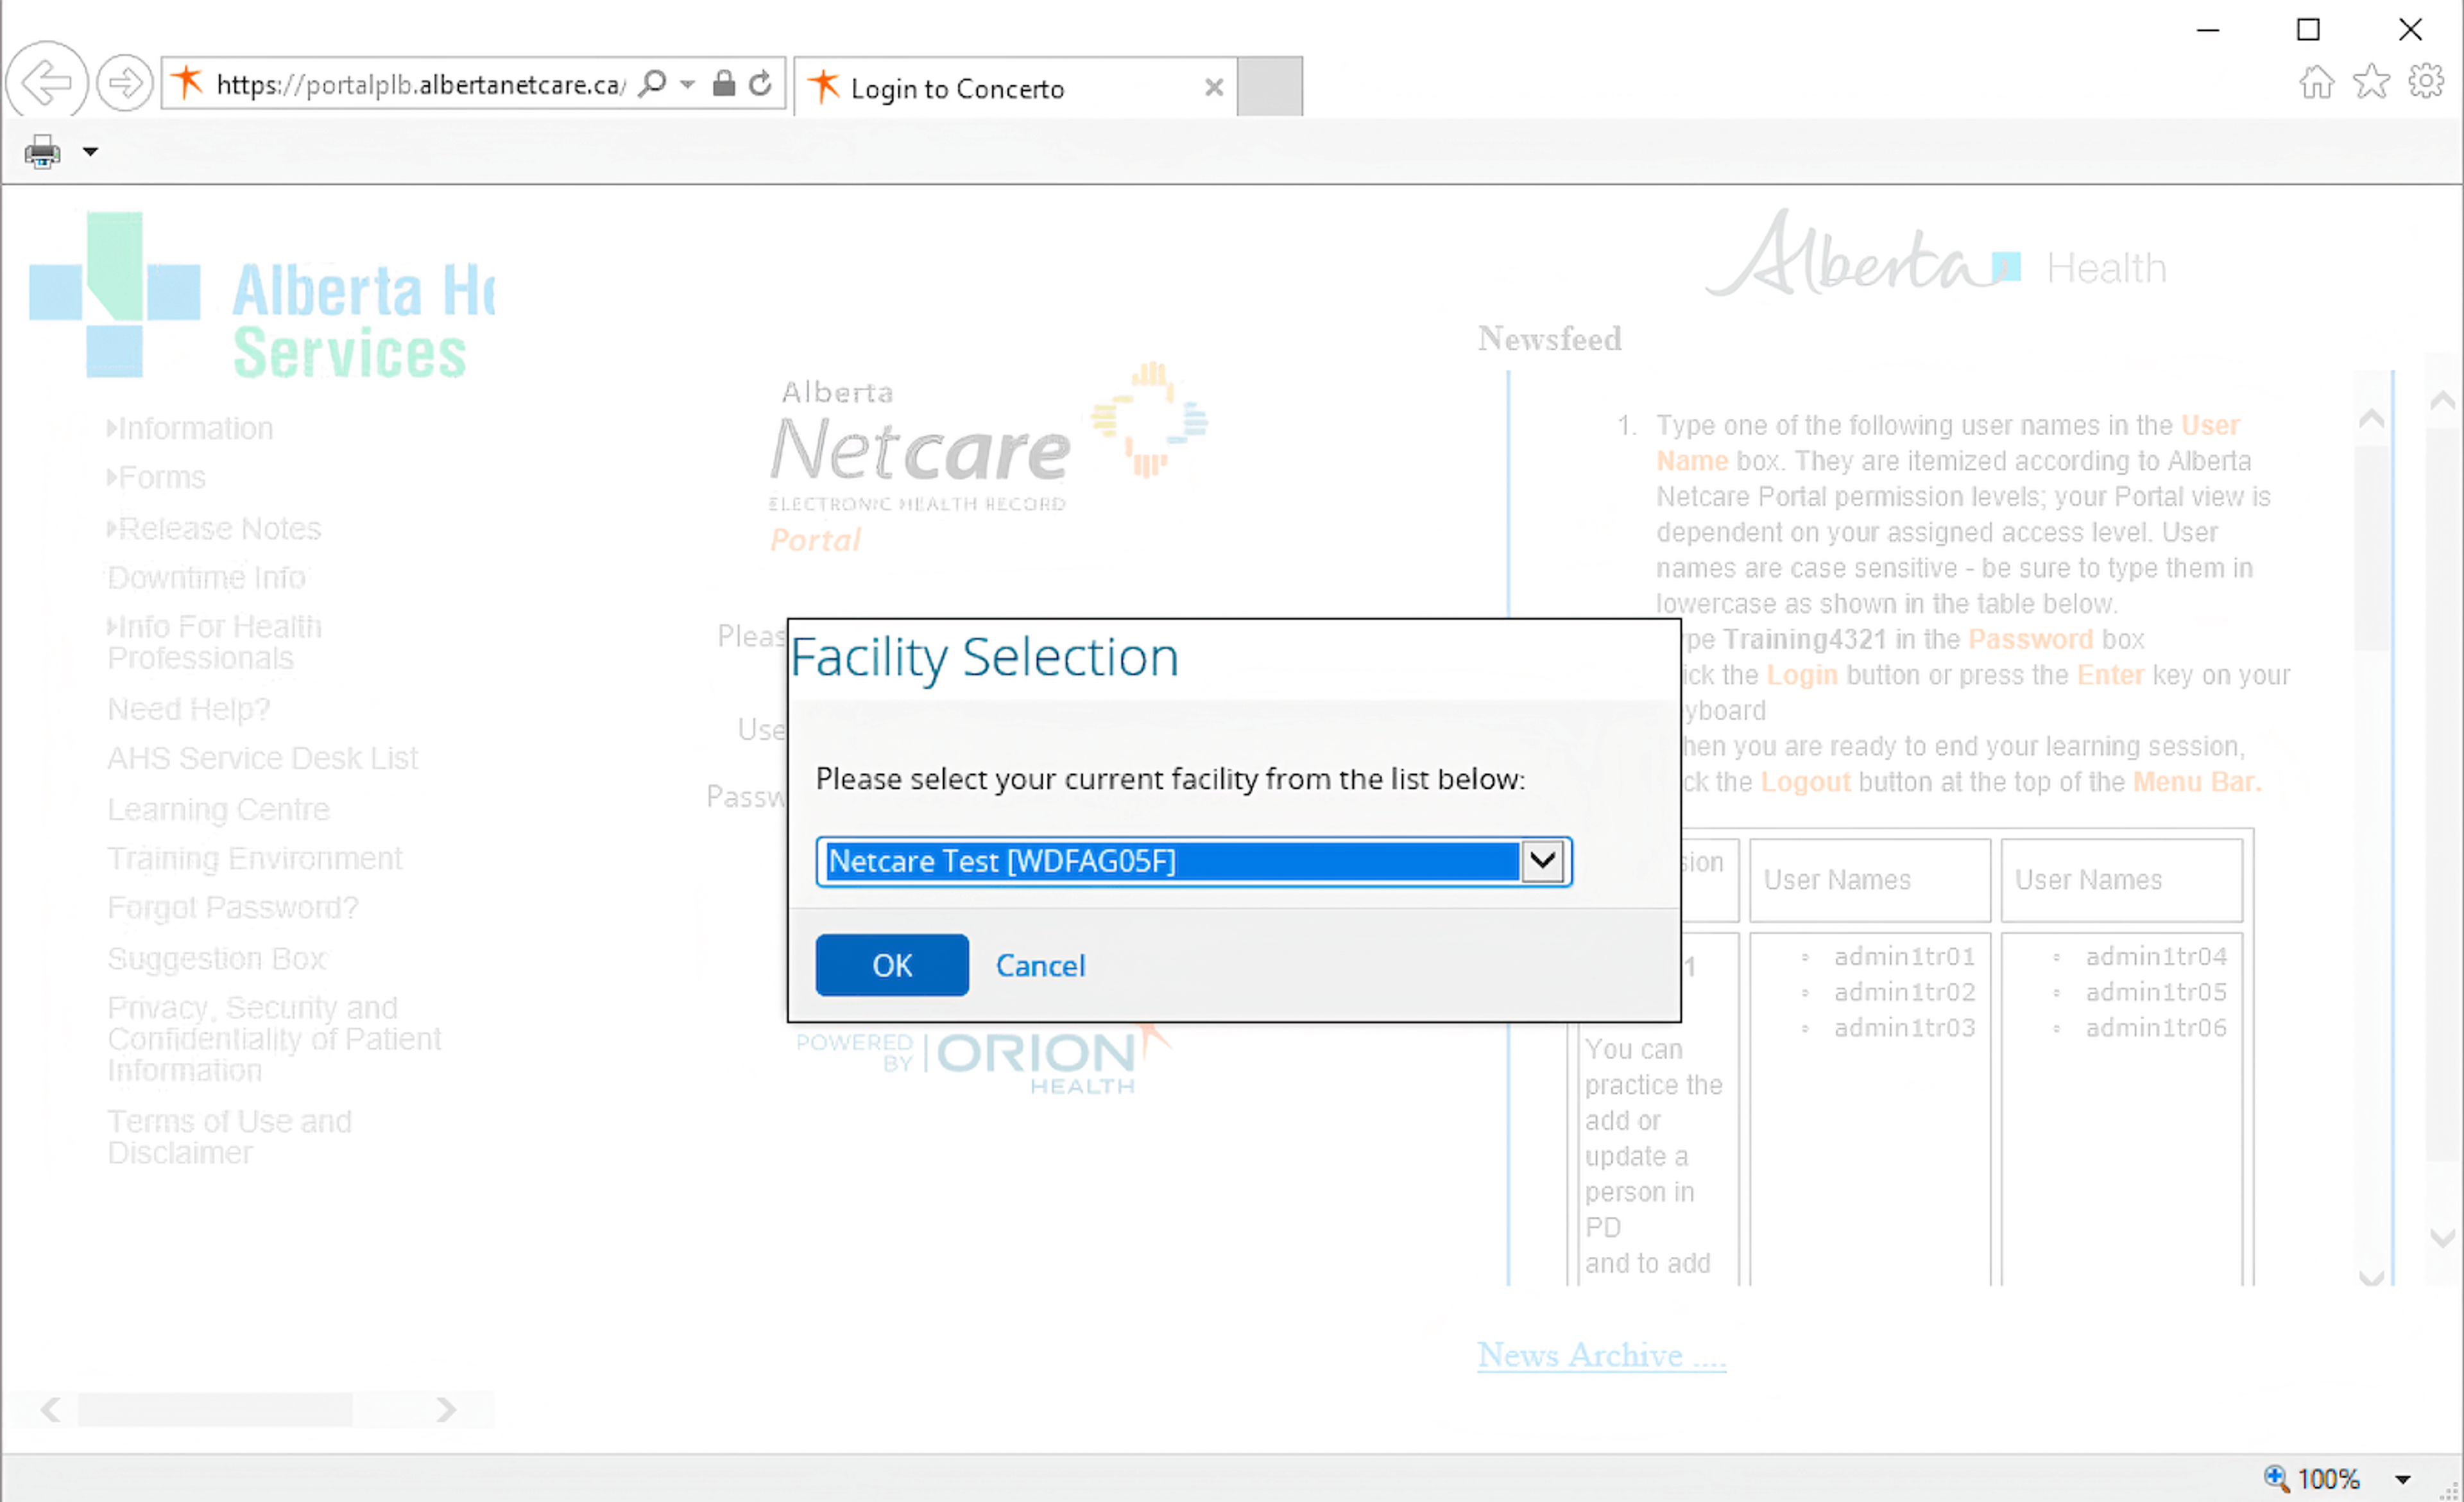 Alberta Netcare facility selection dialog